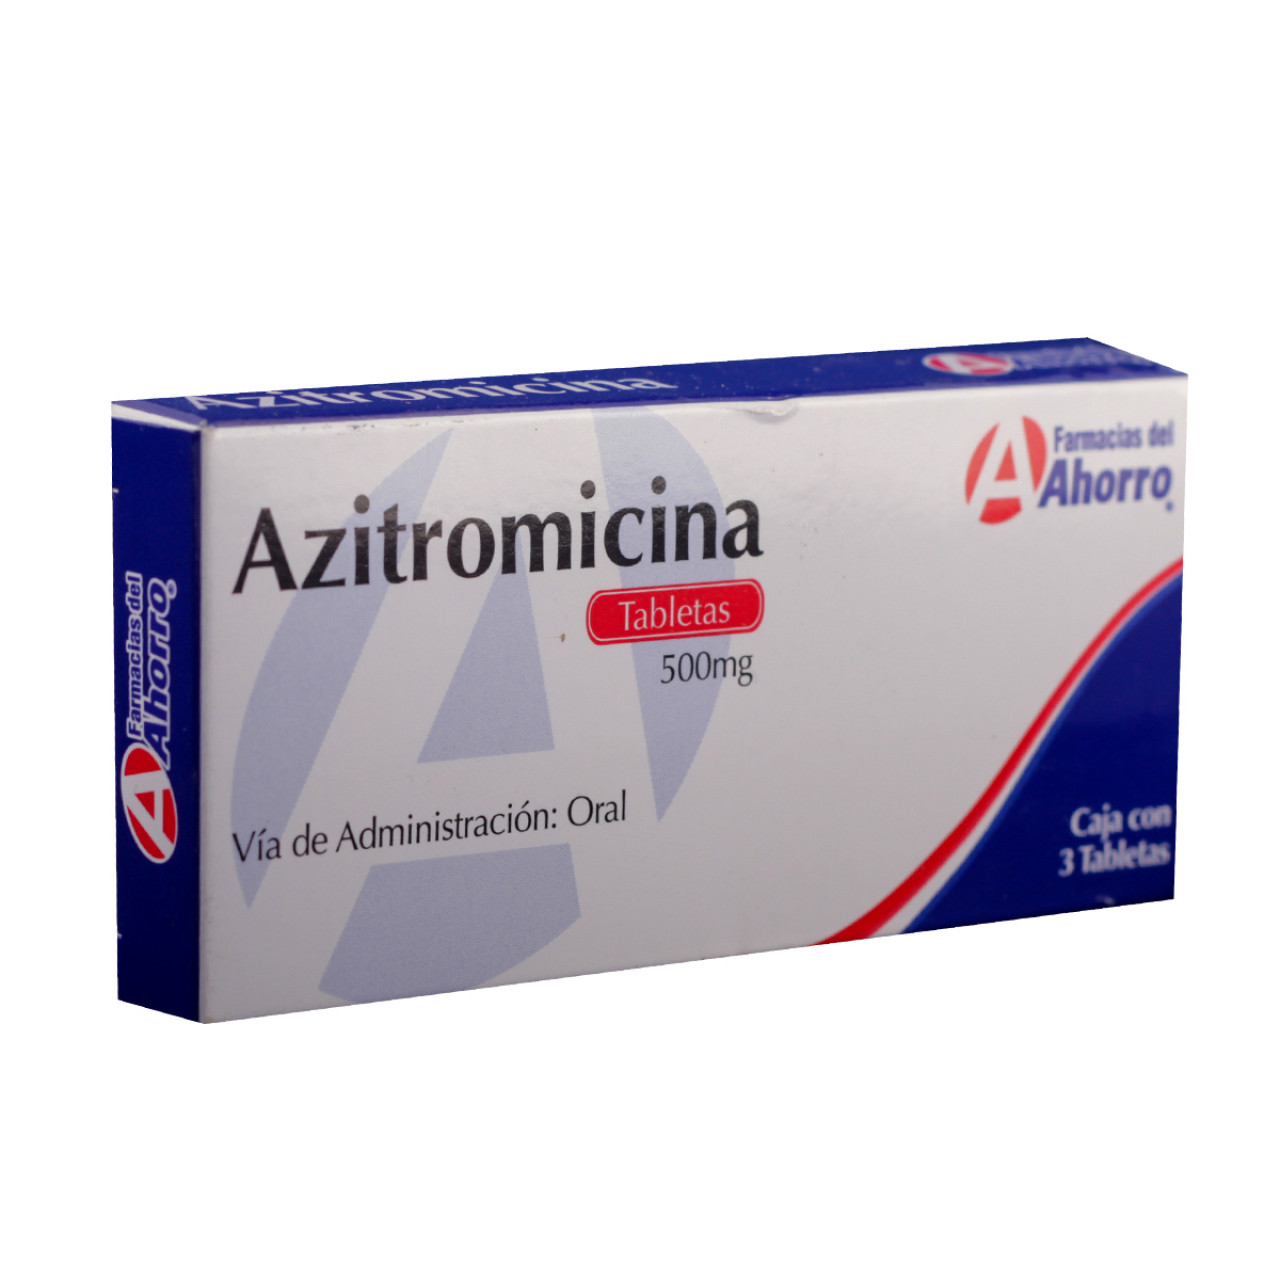 Azitromicina 500 Mg: ¿Qué es y cuánto cuesta?